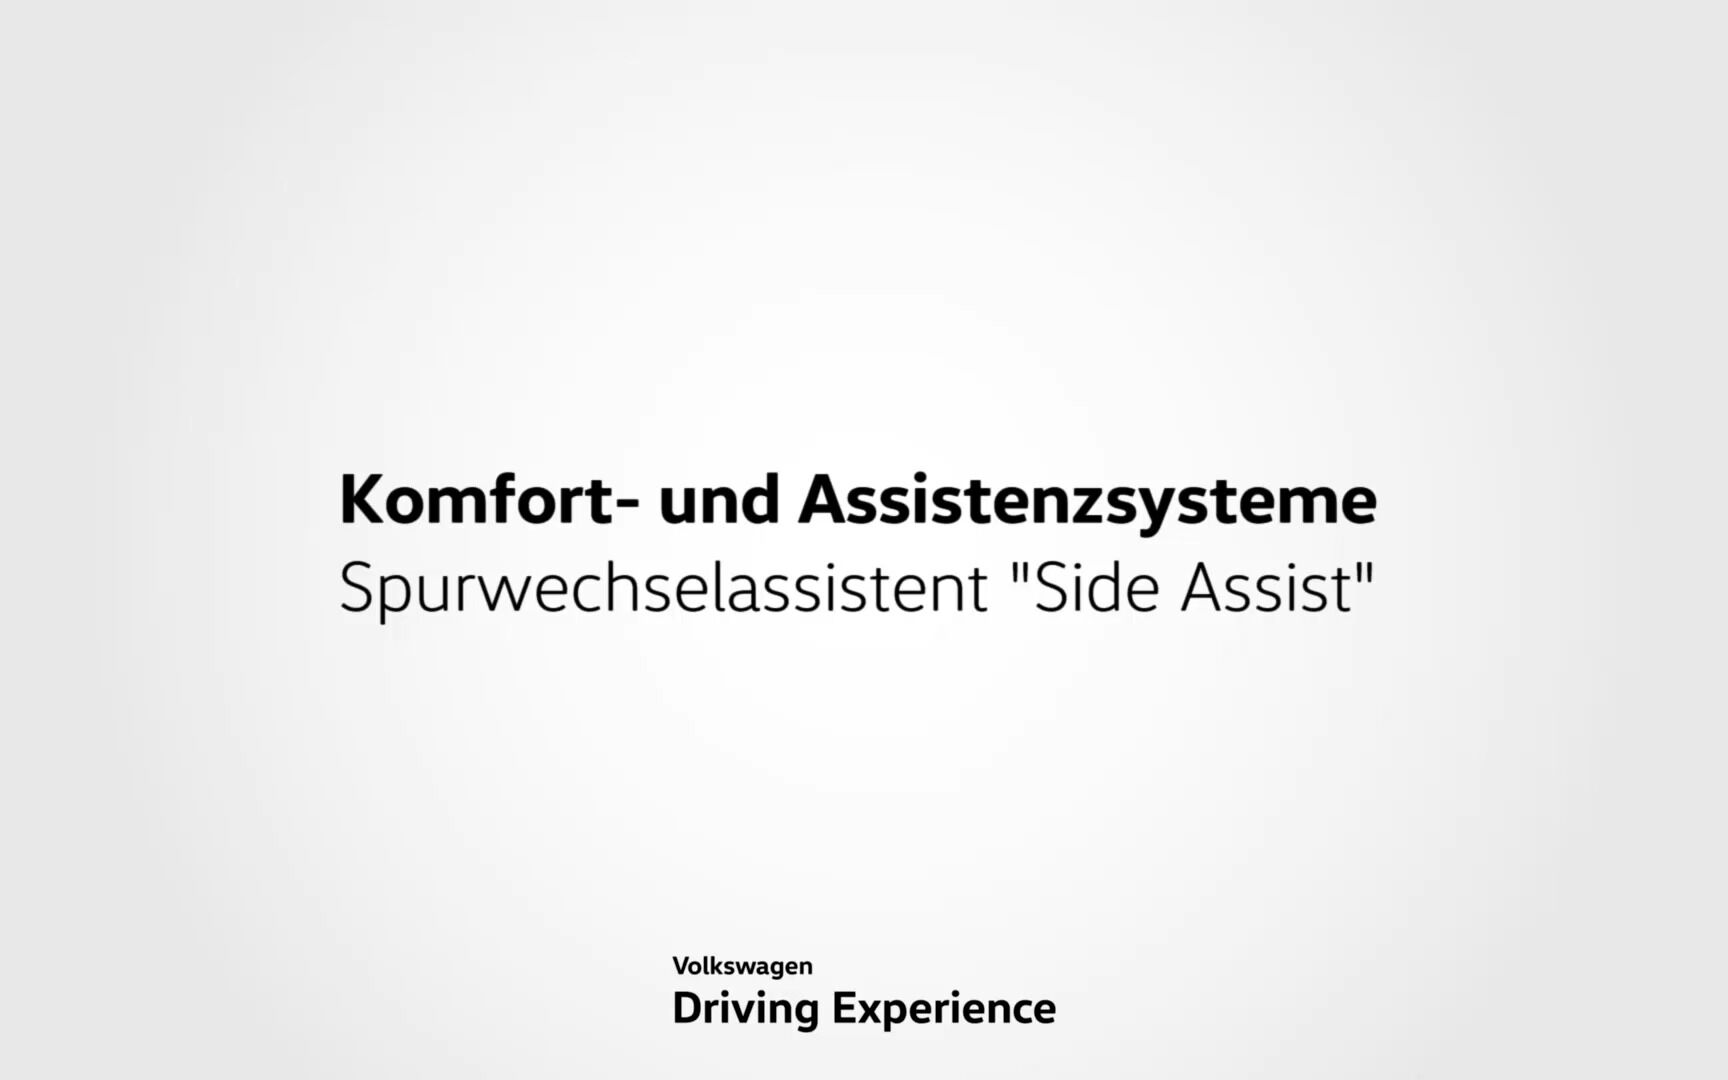 Spurwechselassistent Side Assist - Volkswagen